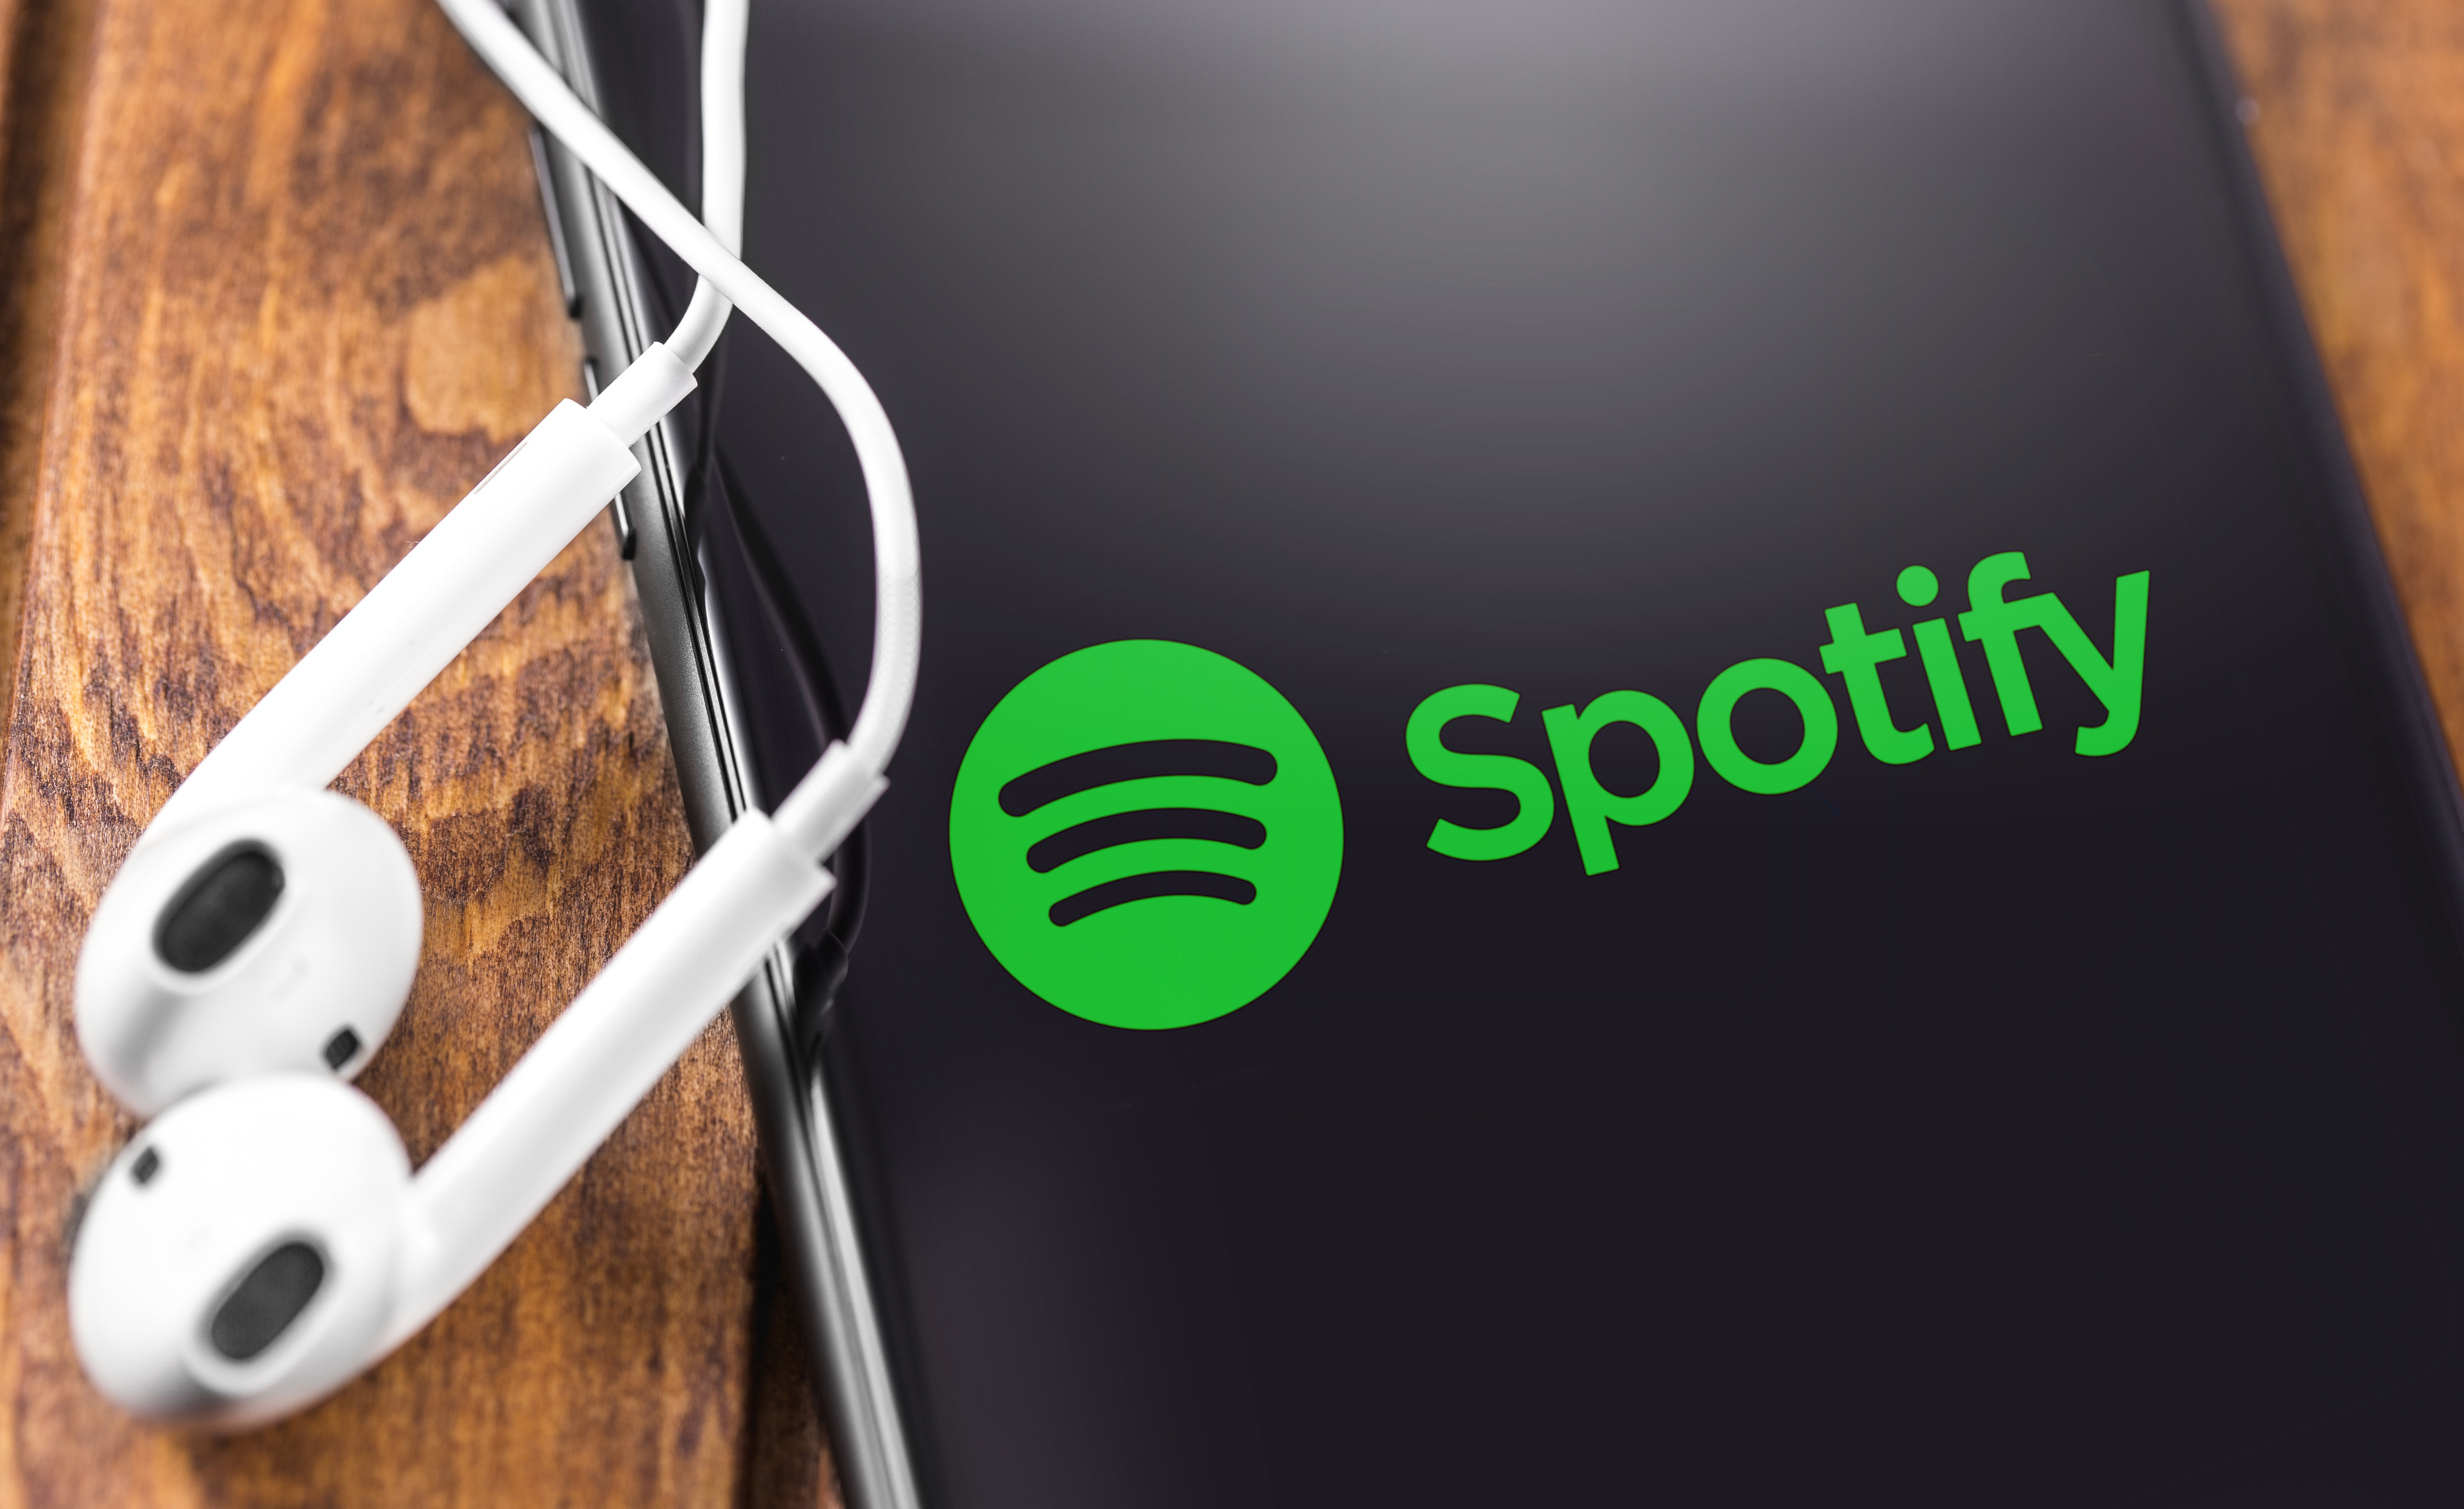     Spotify est officiellement disponible en Martinique et en Guadeloupe

